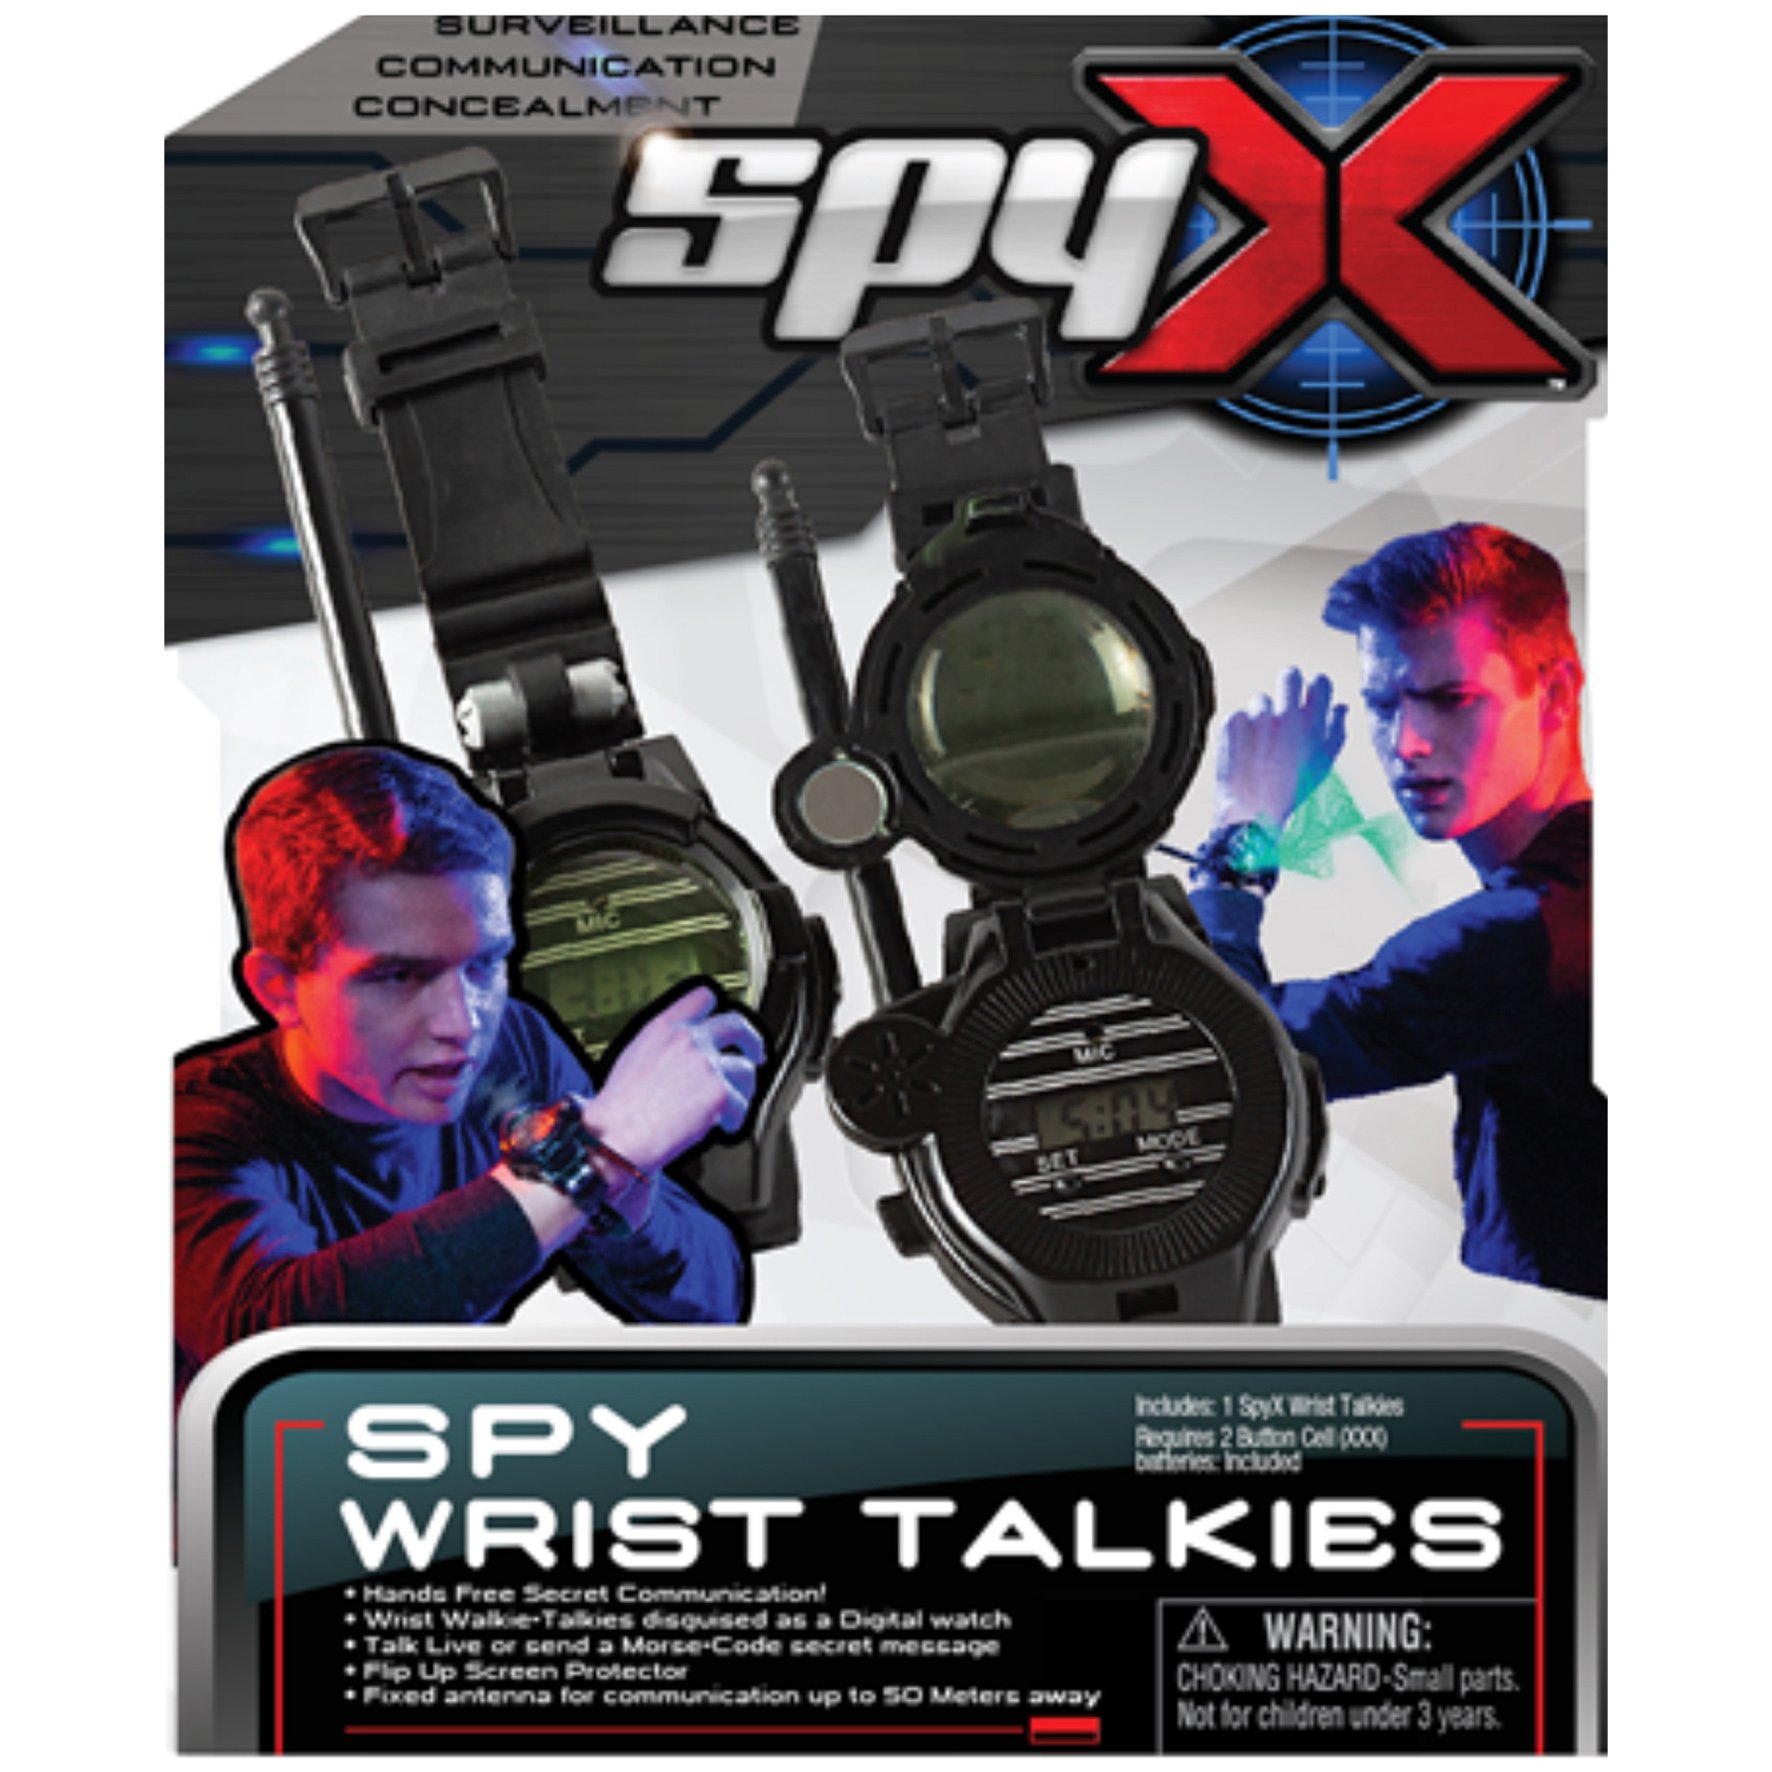 SpyX - Wrist Talkies (29-9104-00)